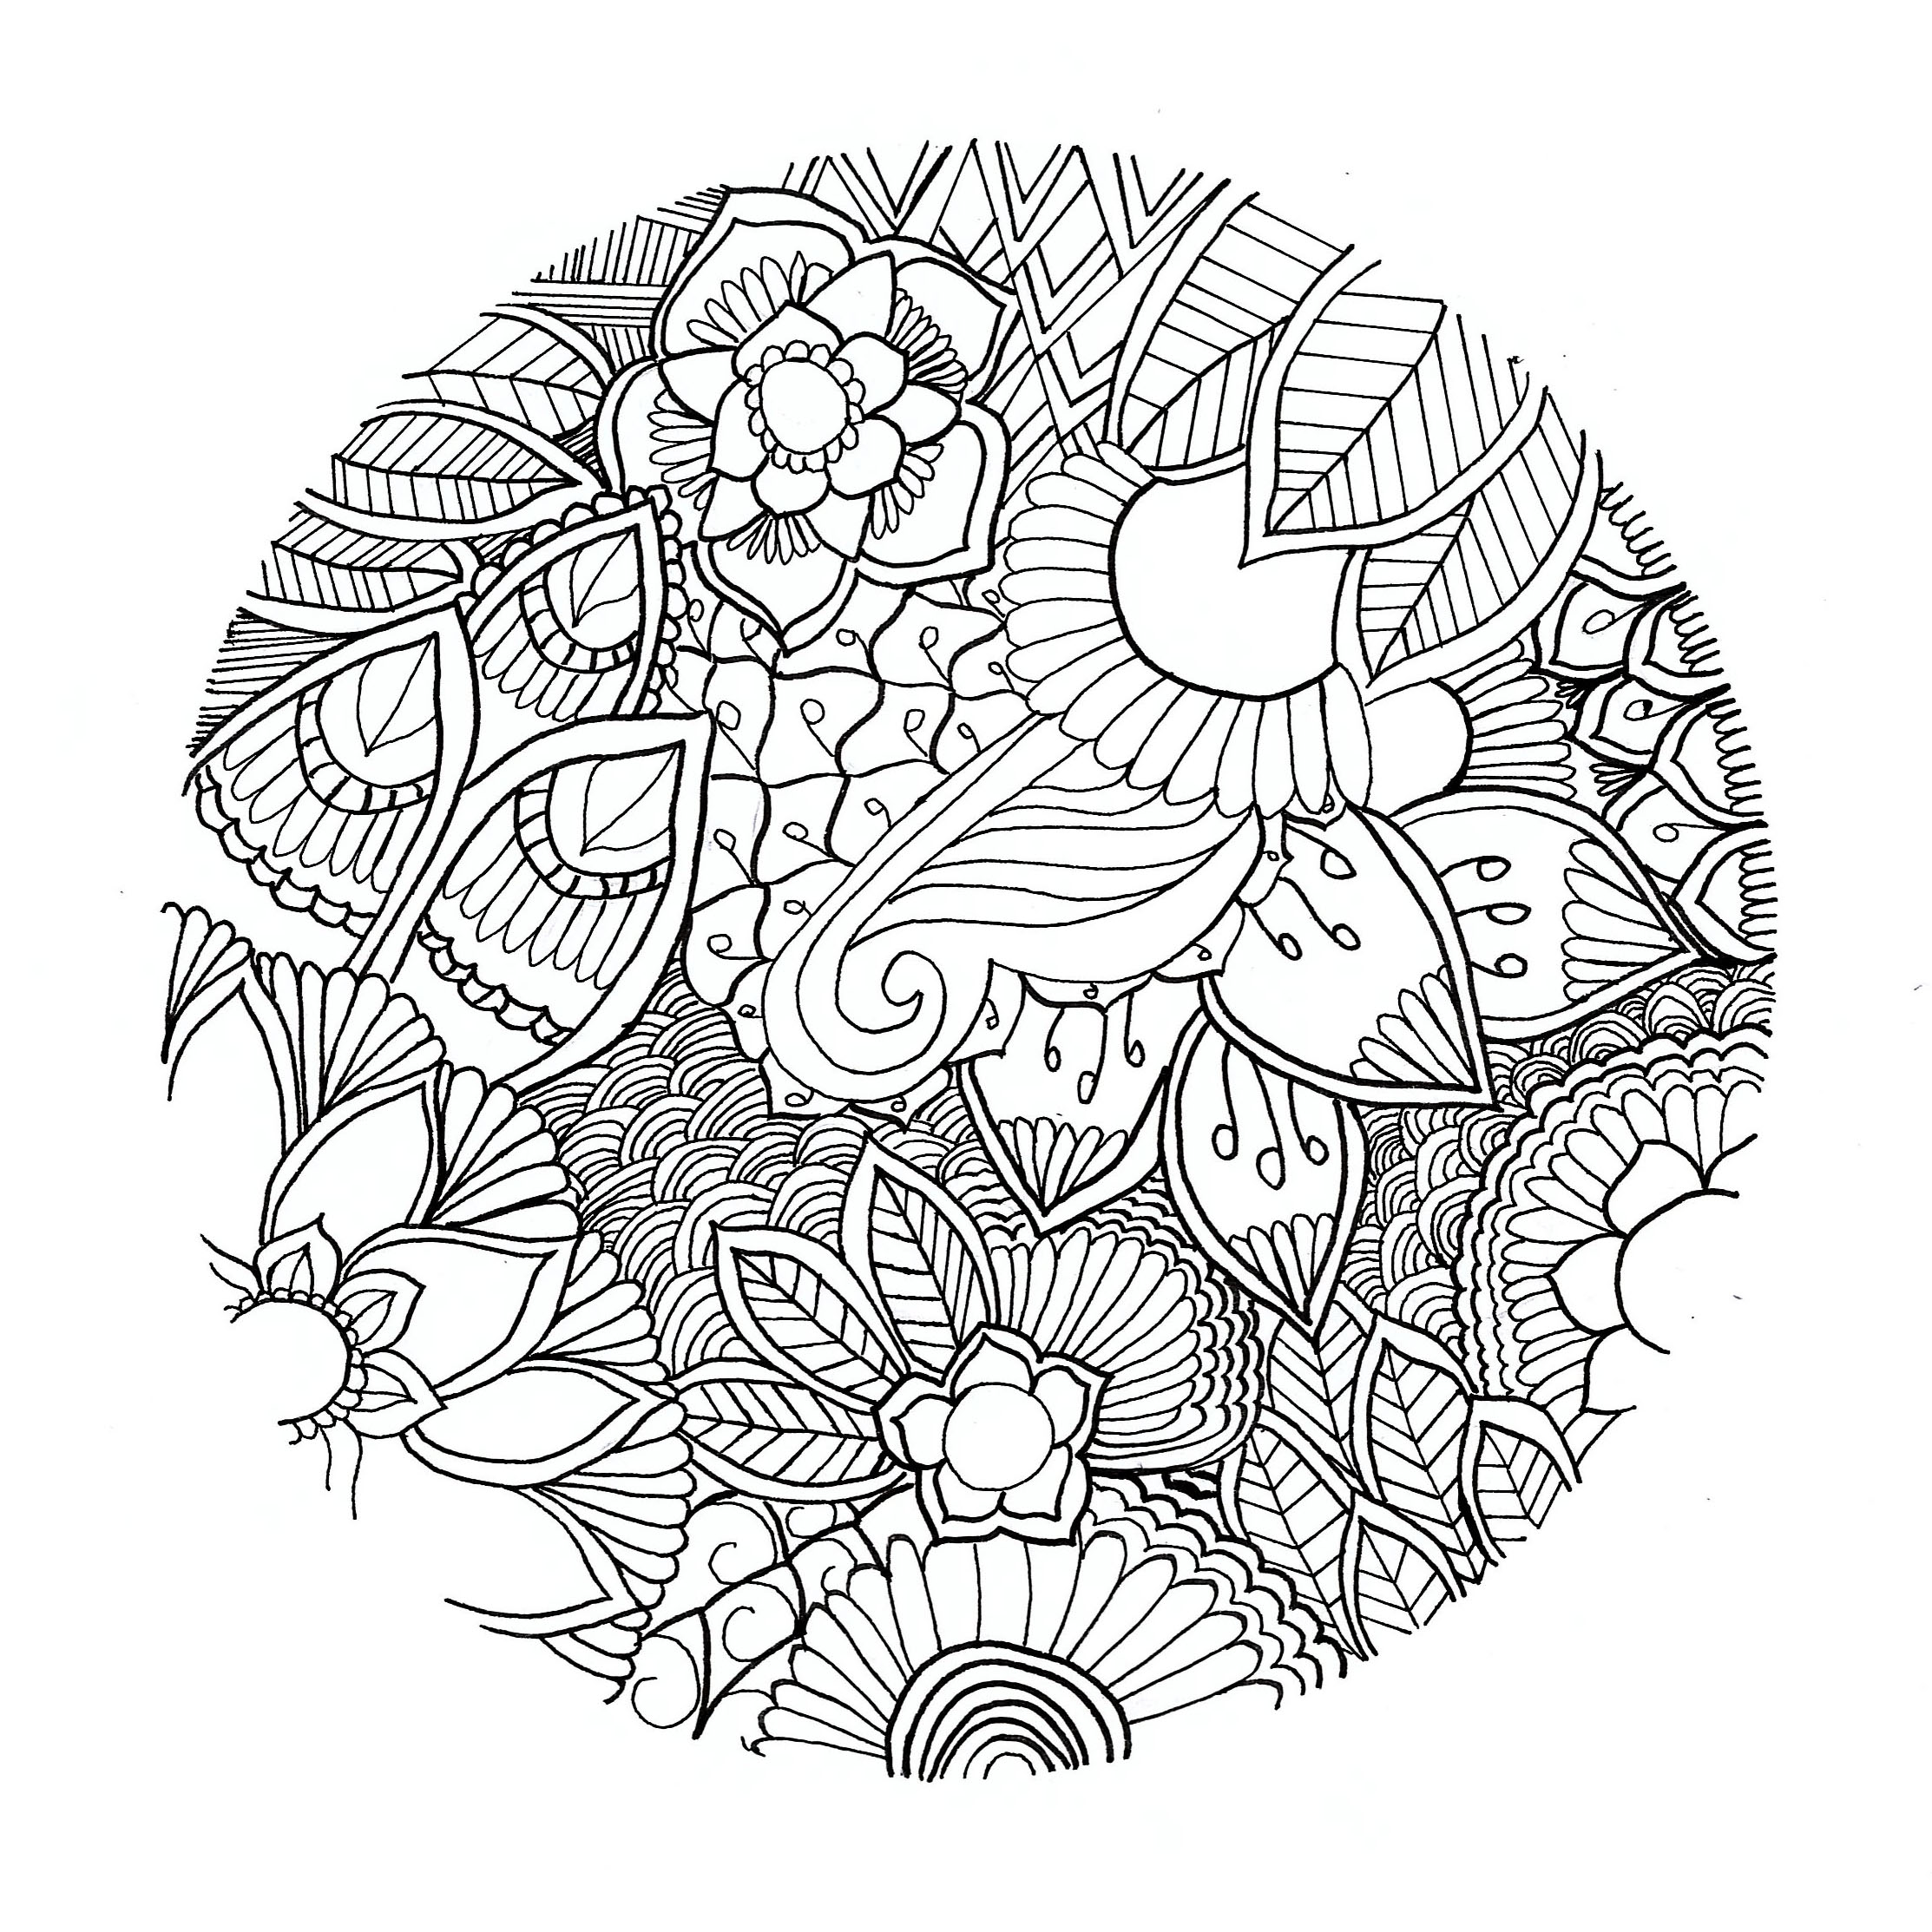 Uma mandala floral original e muito leve, sem contorno! Por Chloé. Trata-se de um círculo com flores desenhadas de forma realista e não simétrica.